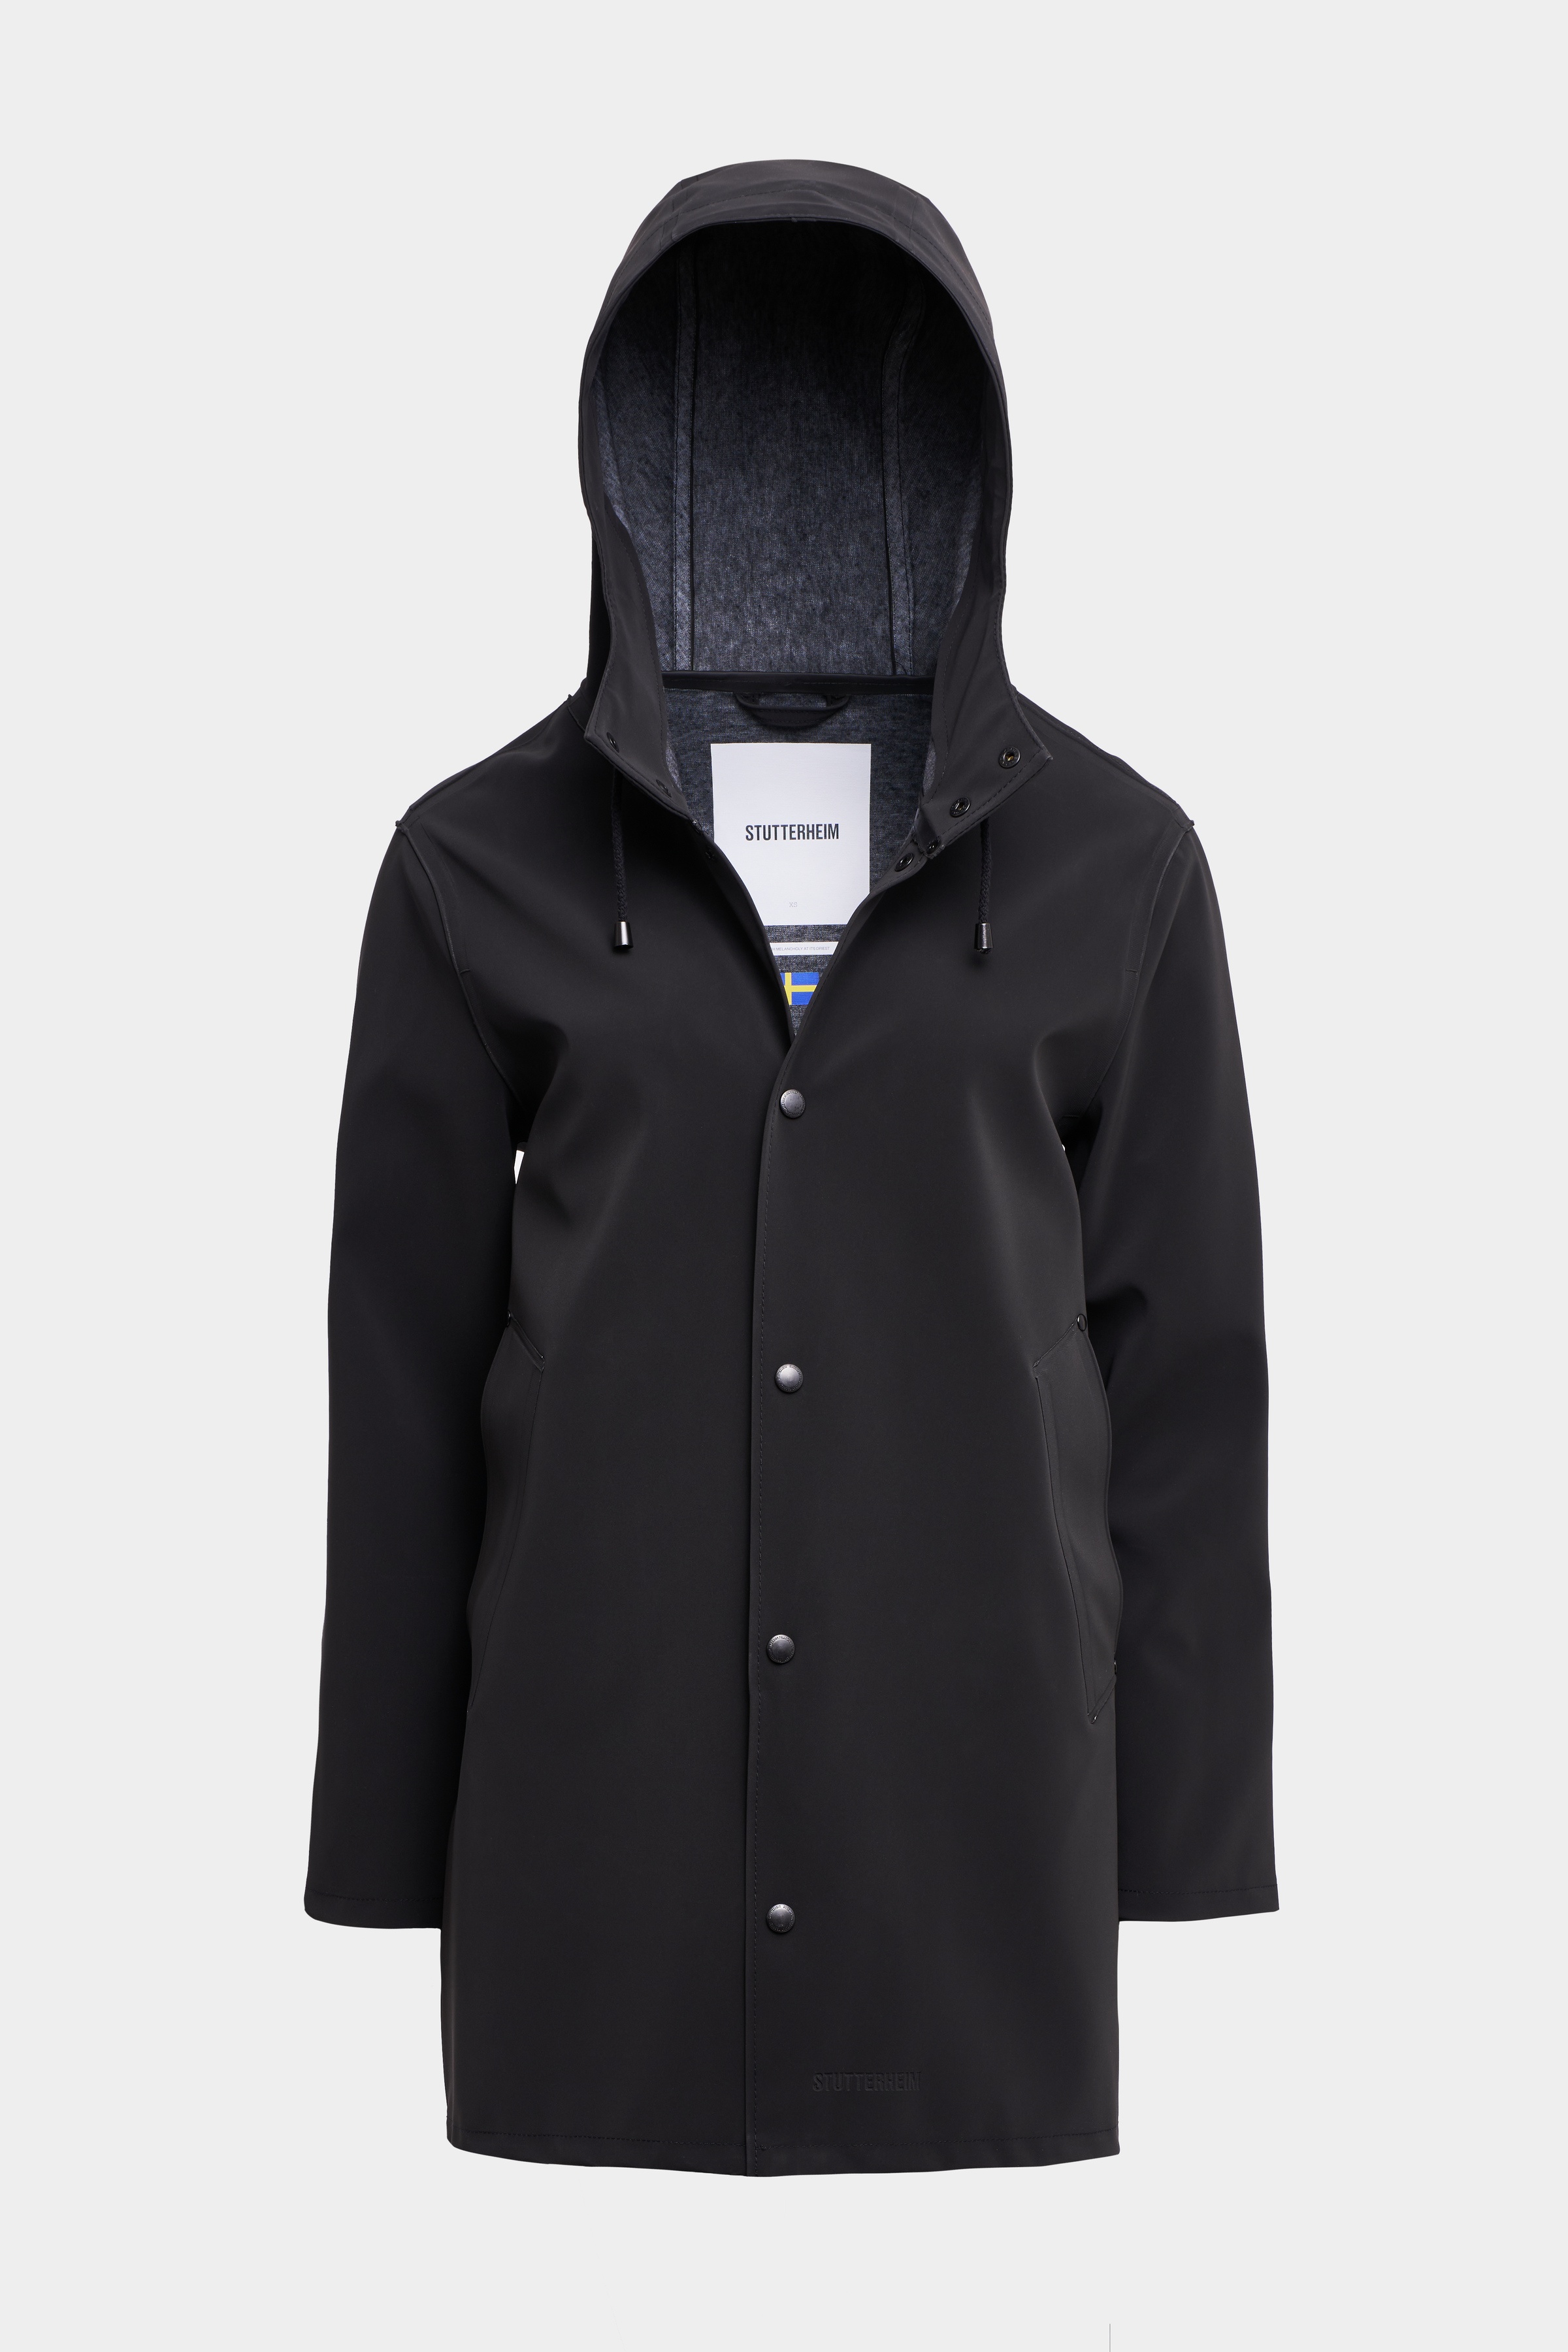 Stockholm Matte Raincoat Black - 1